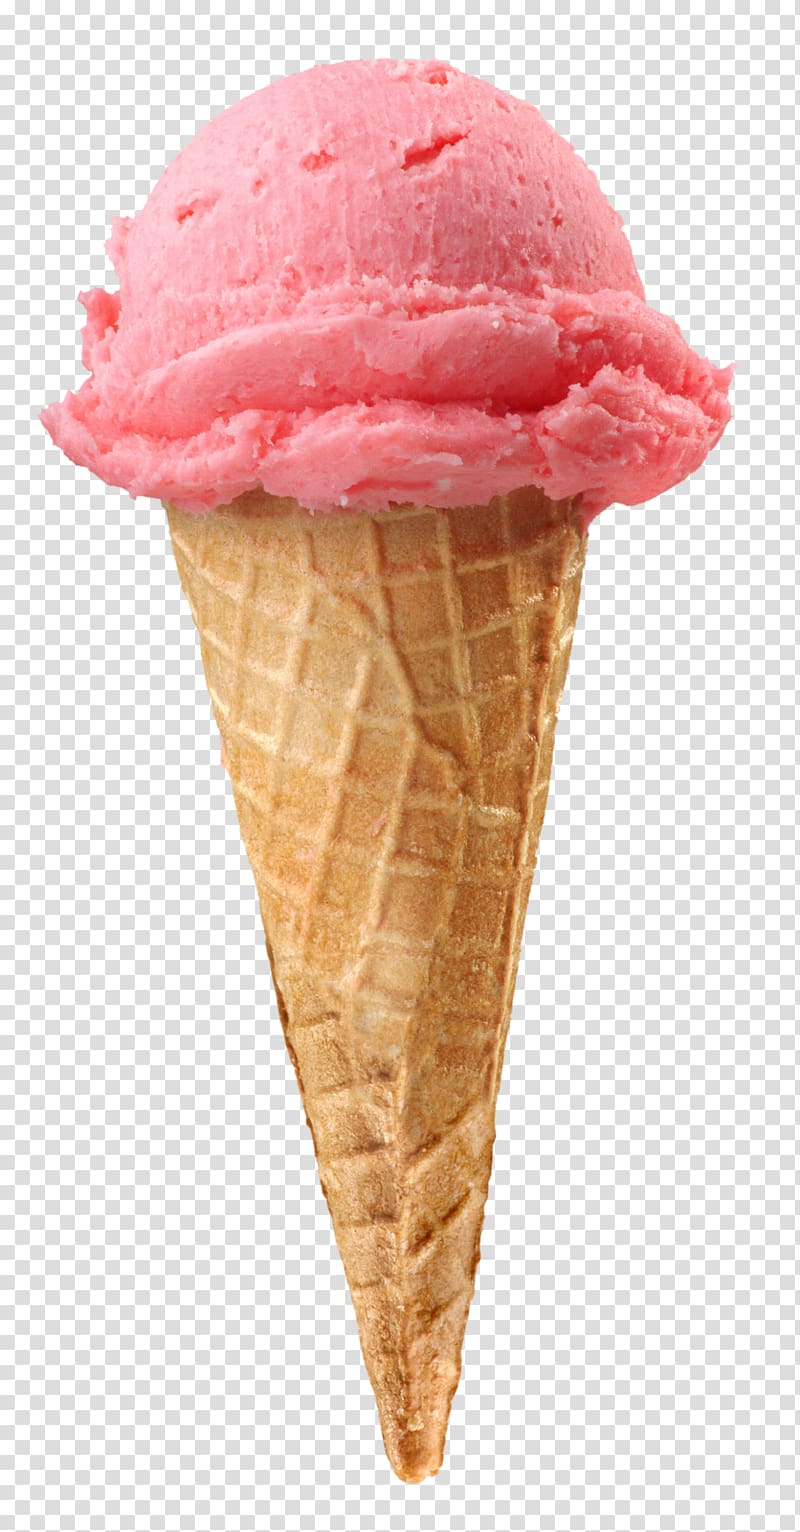 Ice Cream Cones Strawberry ice cream Sundae, ice cream